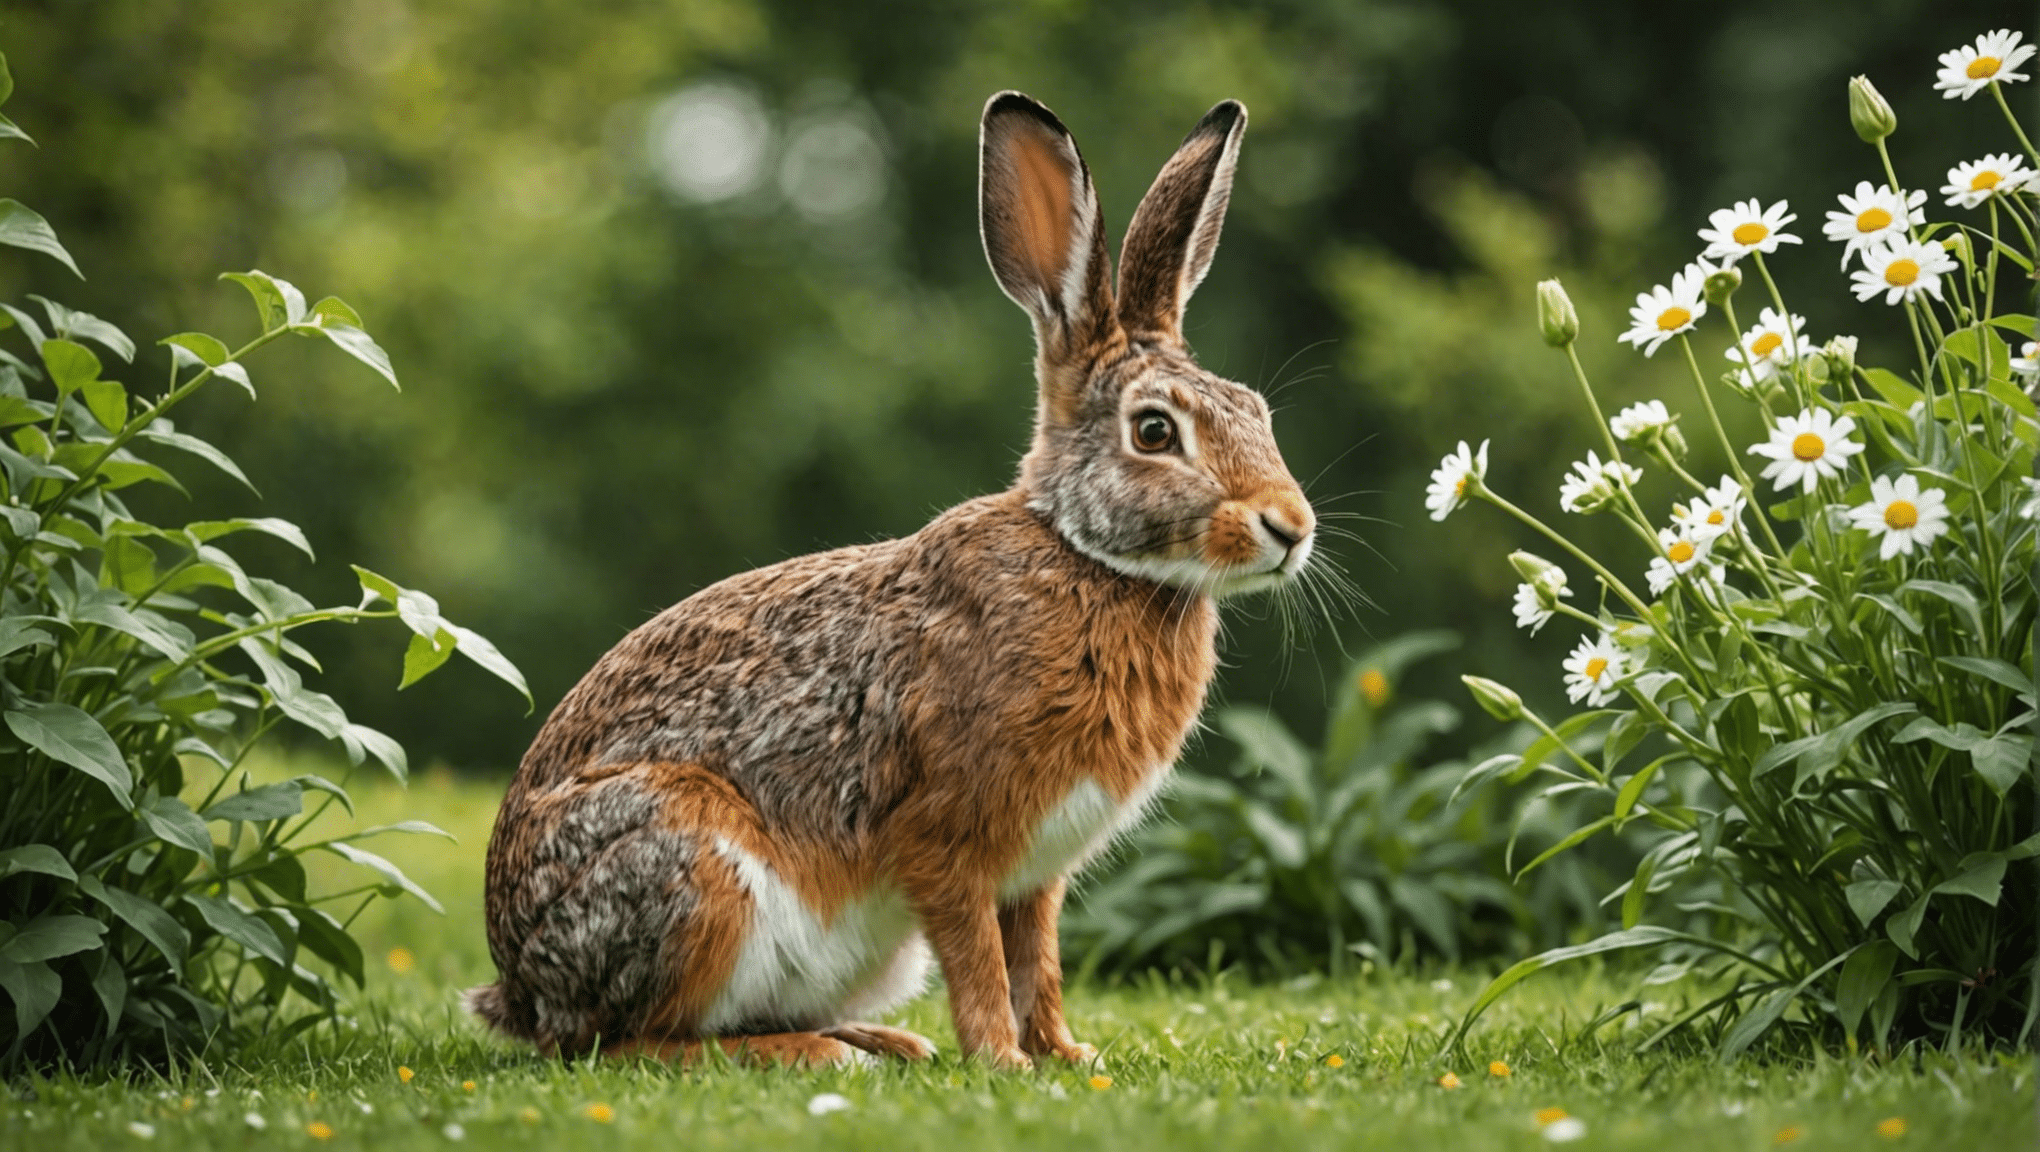 opdag forskellene mellem harer og kaniner i denne indsigtsfulde udforskning af deres unikke egenskaber og adfærd.